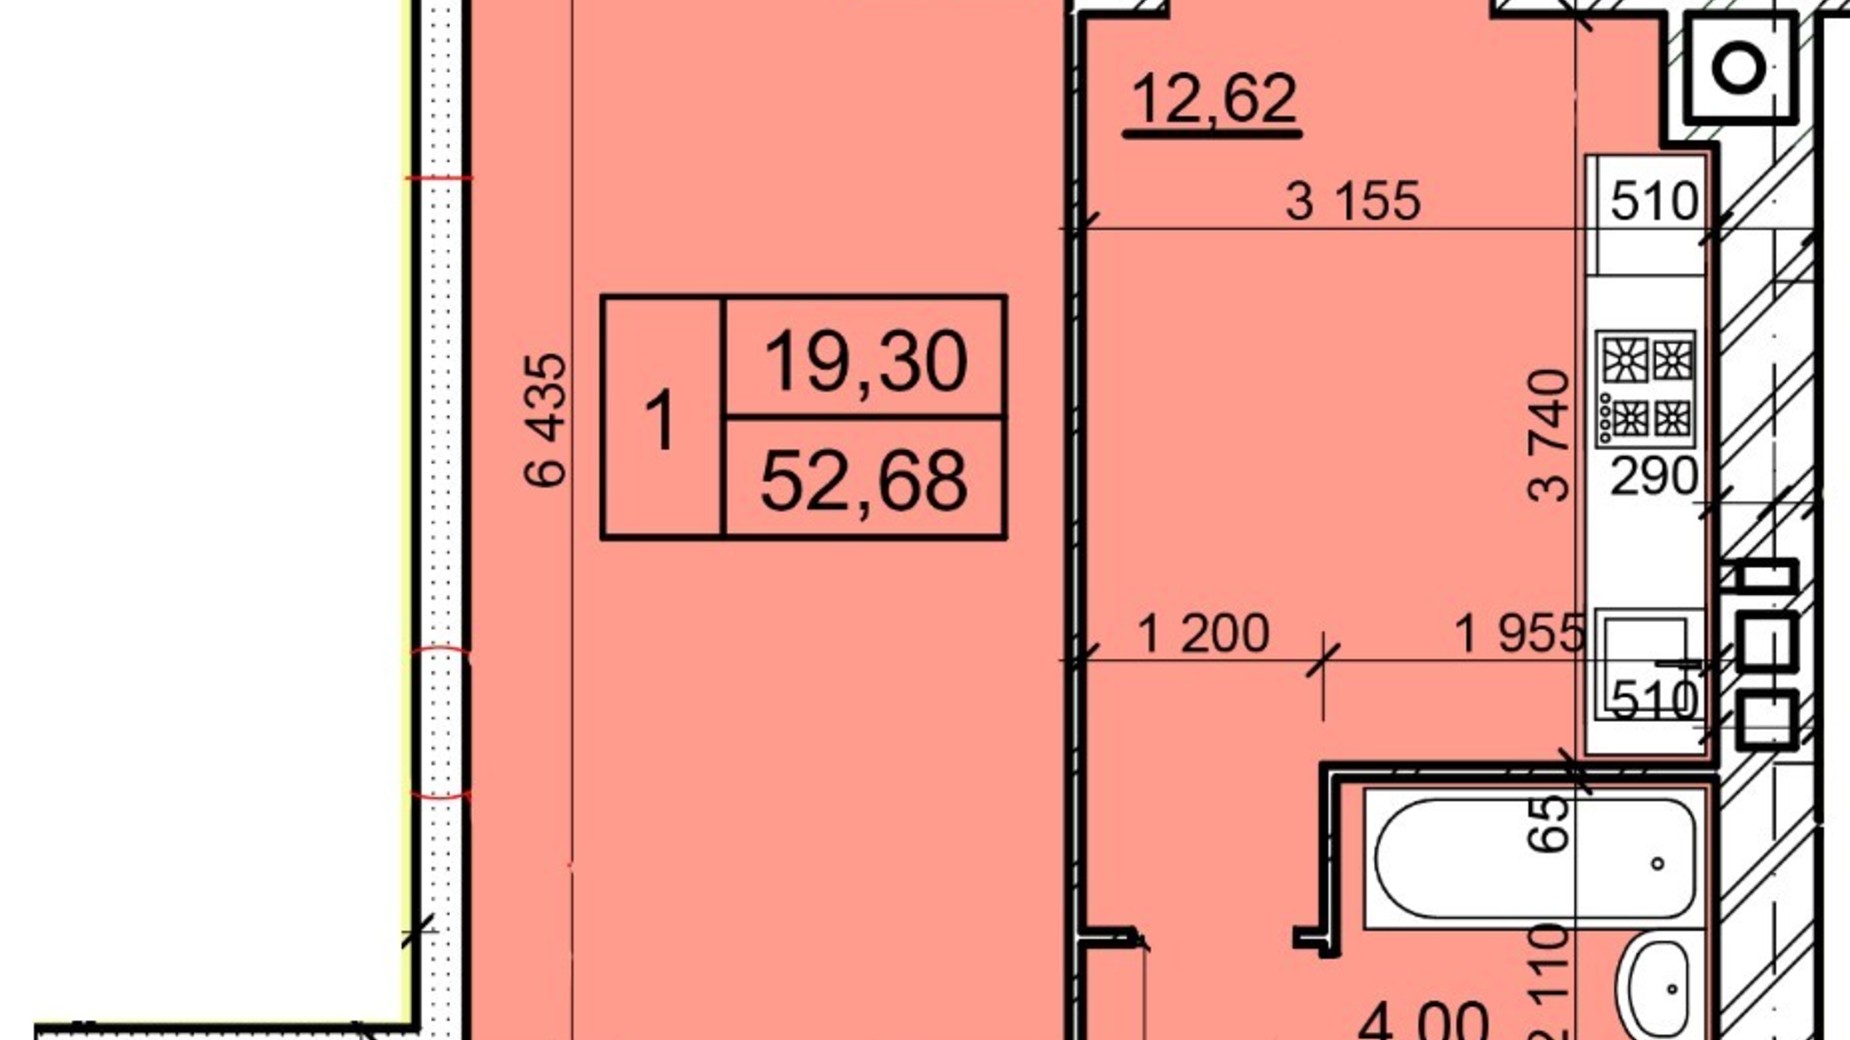 Планування 1-кімнатної квартири в ЖК Дім 3 52.68 м², фото 654762